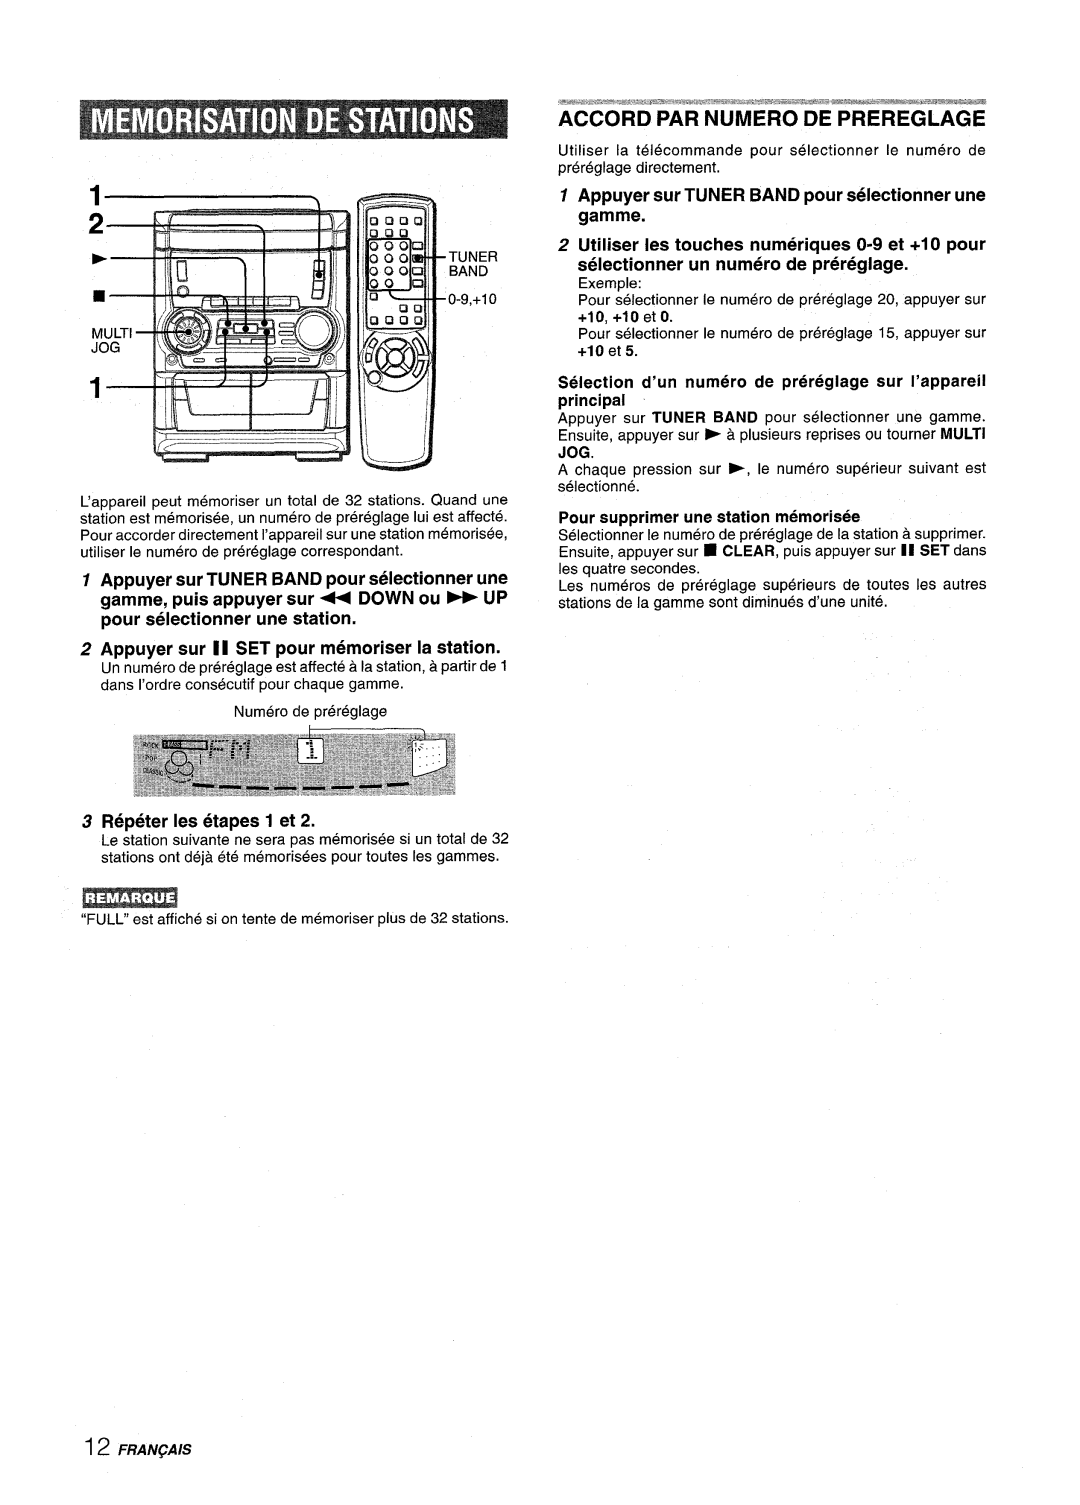 Aiwa SX-C605 manual Accord Par Numero De Prereglage, Appuyer sur TUNER BAND pour selectionner une, Repeter Ies etapes 1 et 